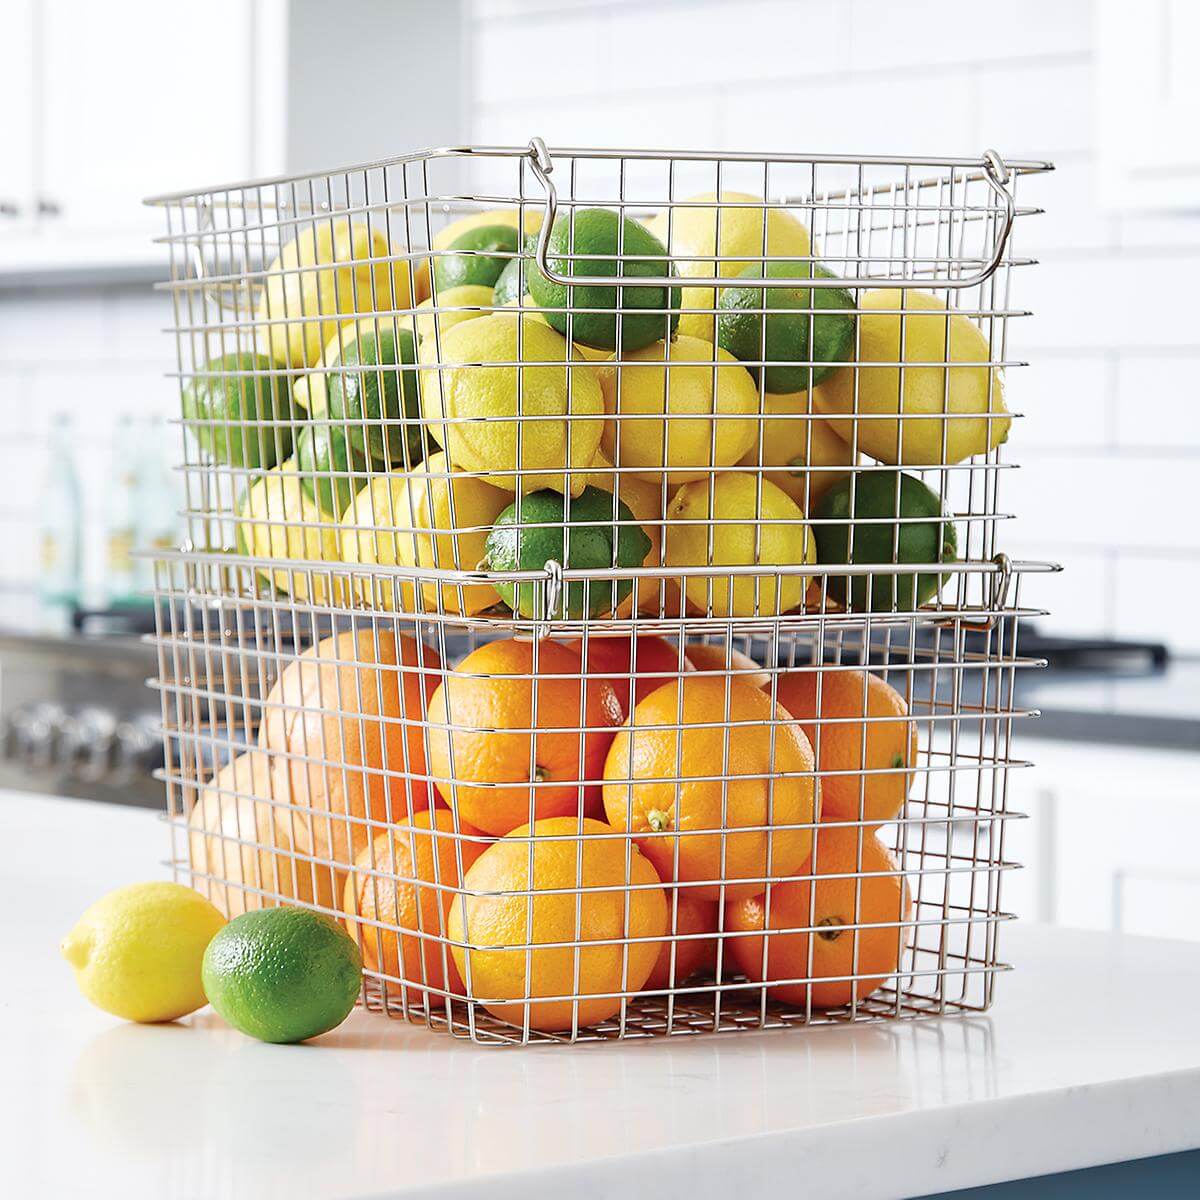 Căn bếp gia đình thêm ngăn nắp với những ý tưởng lưu trữ hoa quả và rau củ cực hay - Ảnh 5.